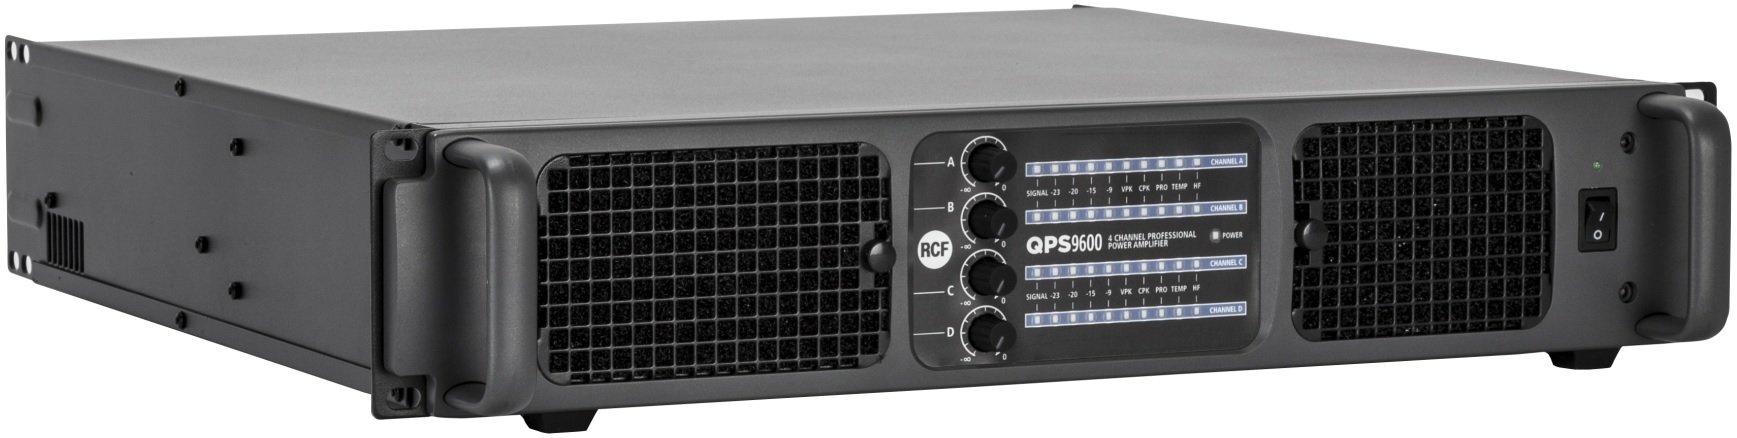   RCF QPS 9600